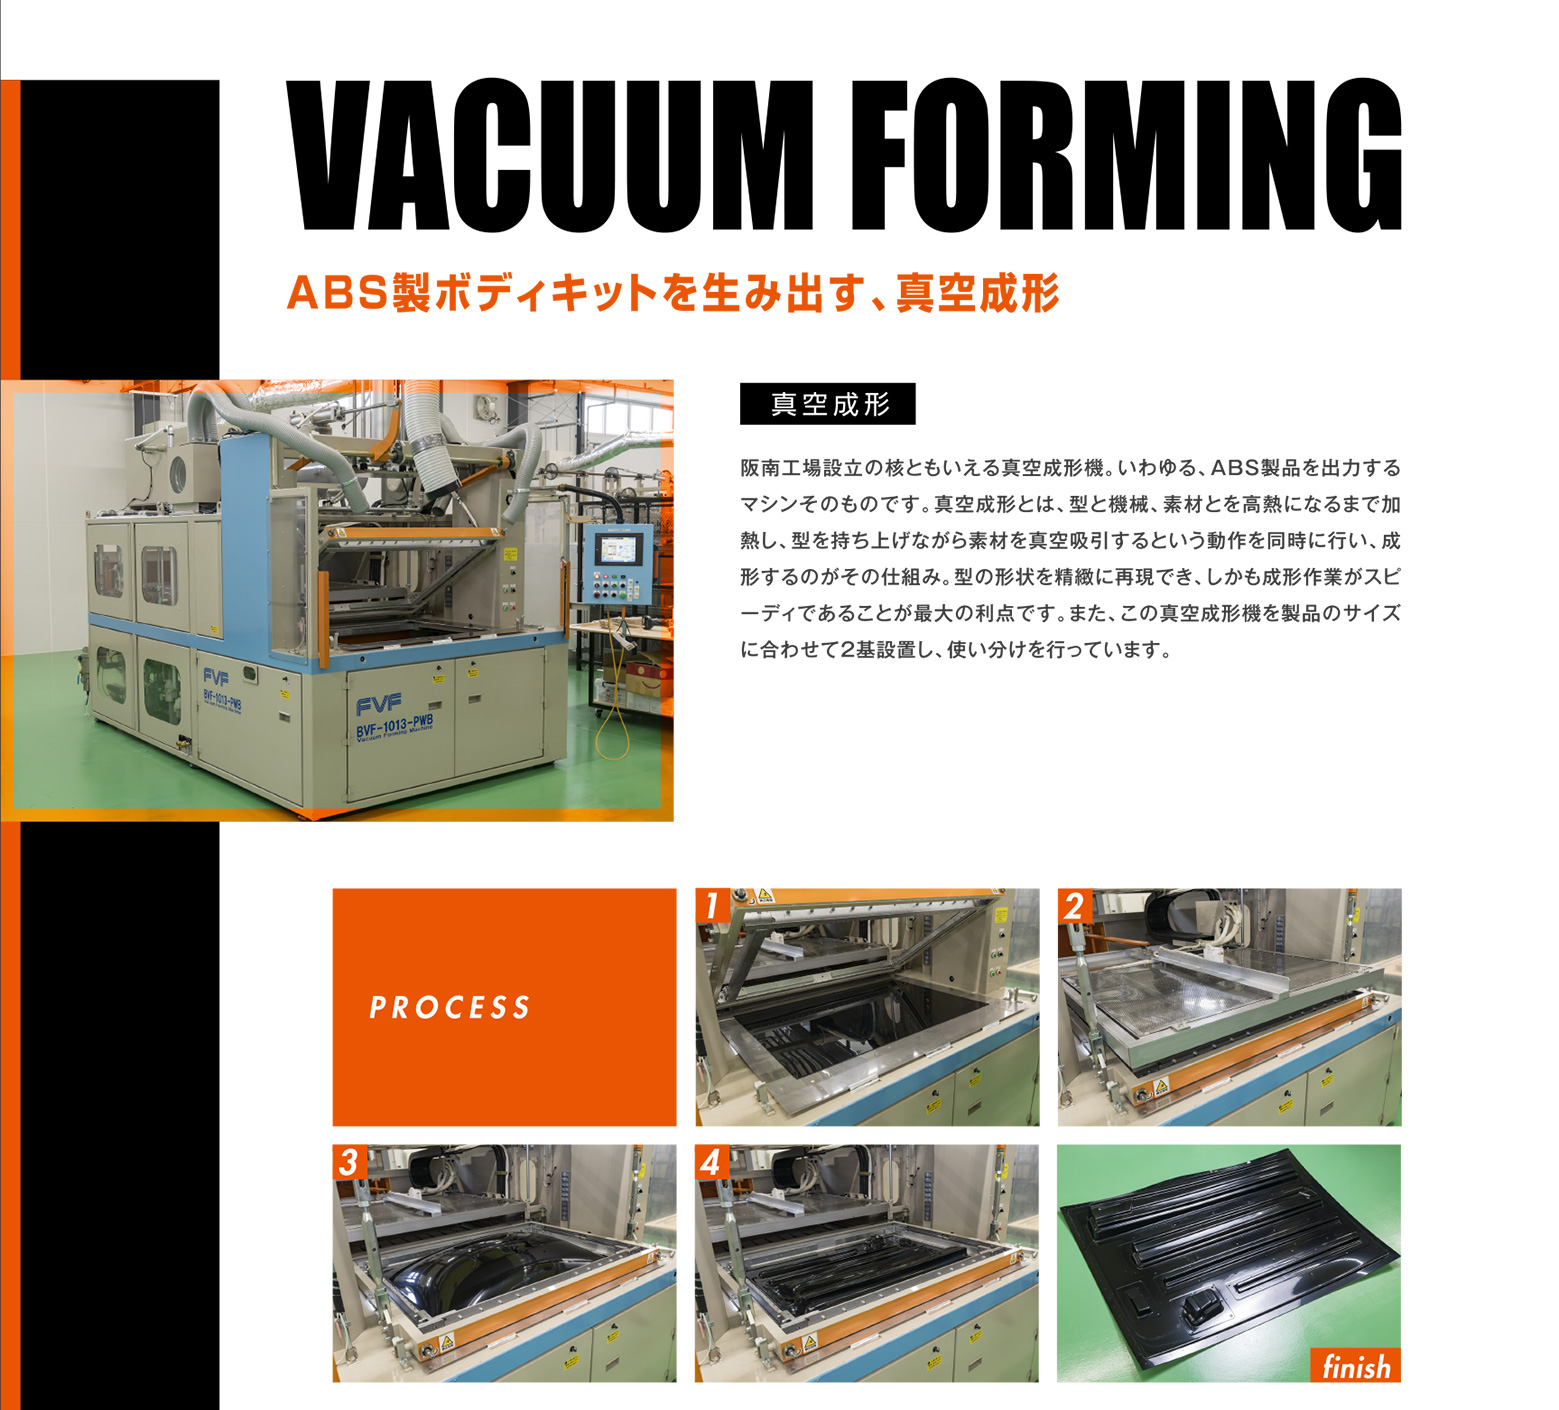 VACUUM  FORMING ABS製ボディキットを生み出す、真空成形 真空成形 阪南工場設立の核ともいえる真空成形機。いわゆる、ABS製品を出力するマシンそのものです。真空成形とは、型と機械、素材とを高熱になるまで加熱し、型を持ち上げながら素材を真空吸引するという動作を同時に行い、成形するのがその仕組み。型の形状を精緻に再現でき、しかも成形作業がスピーディであることが最大の利点です。また、この真空成形機を製品のサイズに合わせて2基設置し、使い分けを行っています。